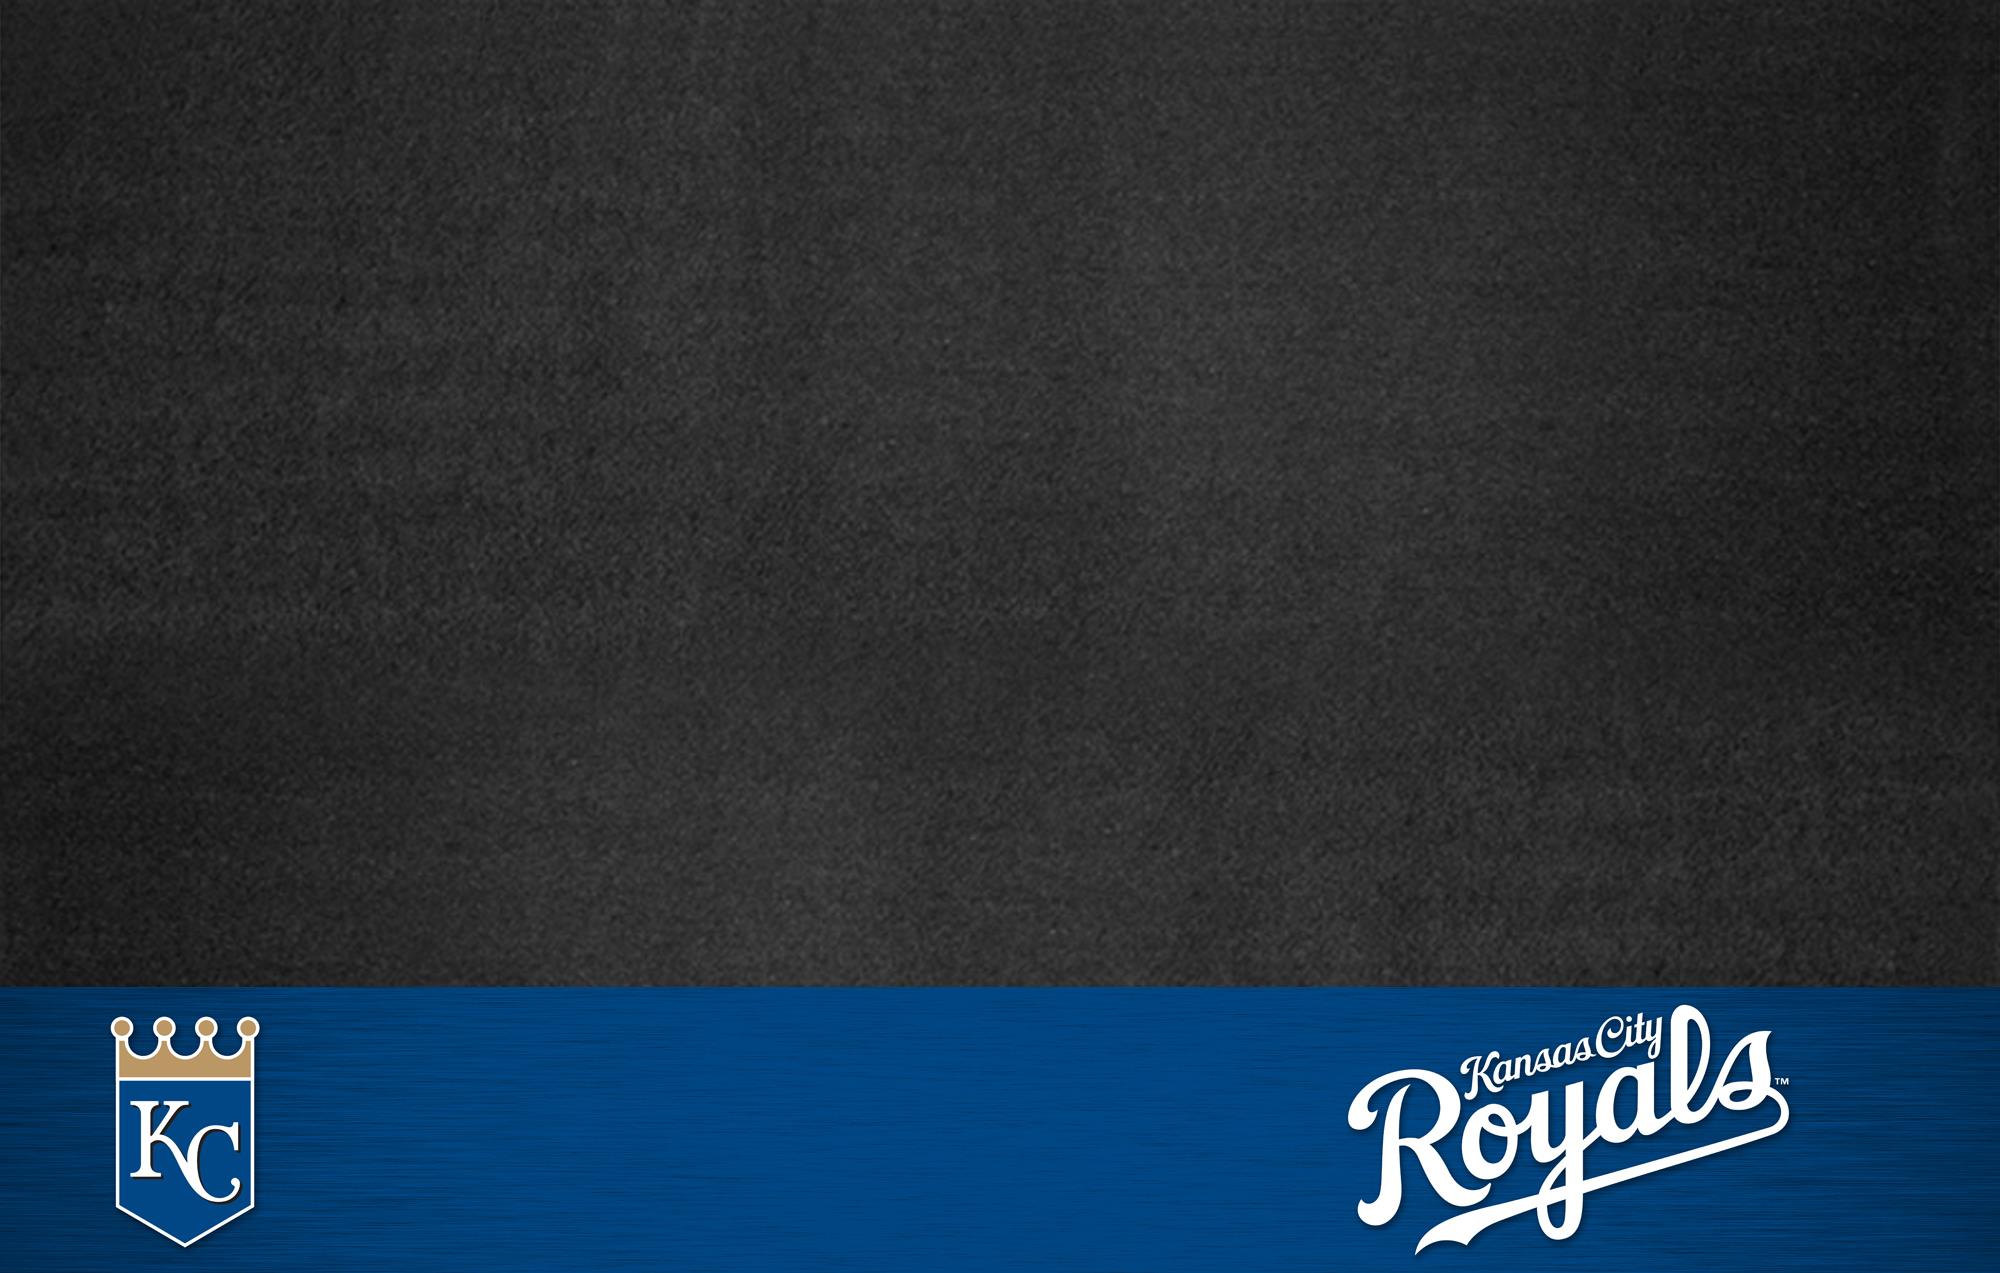 KANSAS CITY ROYALS mlb baseball (16) wallpaper | 1920x1080 ...